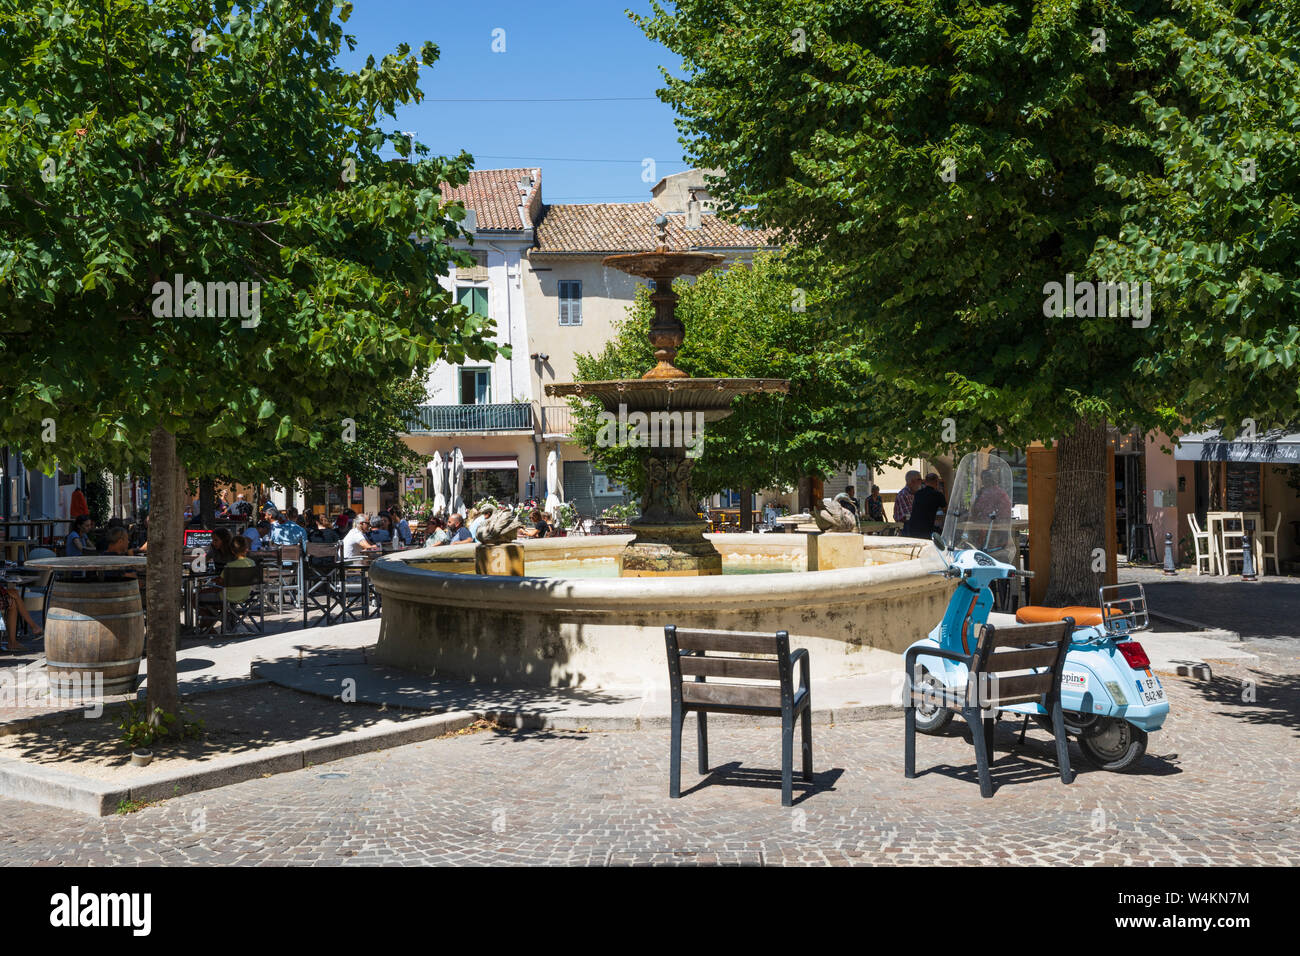 Restaurant scene in the Place du Marche, Saint-Paul-Trois-Chateaux, Drome department, Auvergne-Rhone-Alpes, Provence, France, Europe Stock Photo